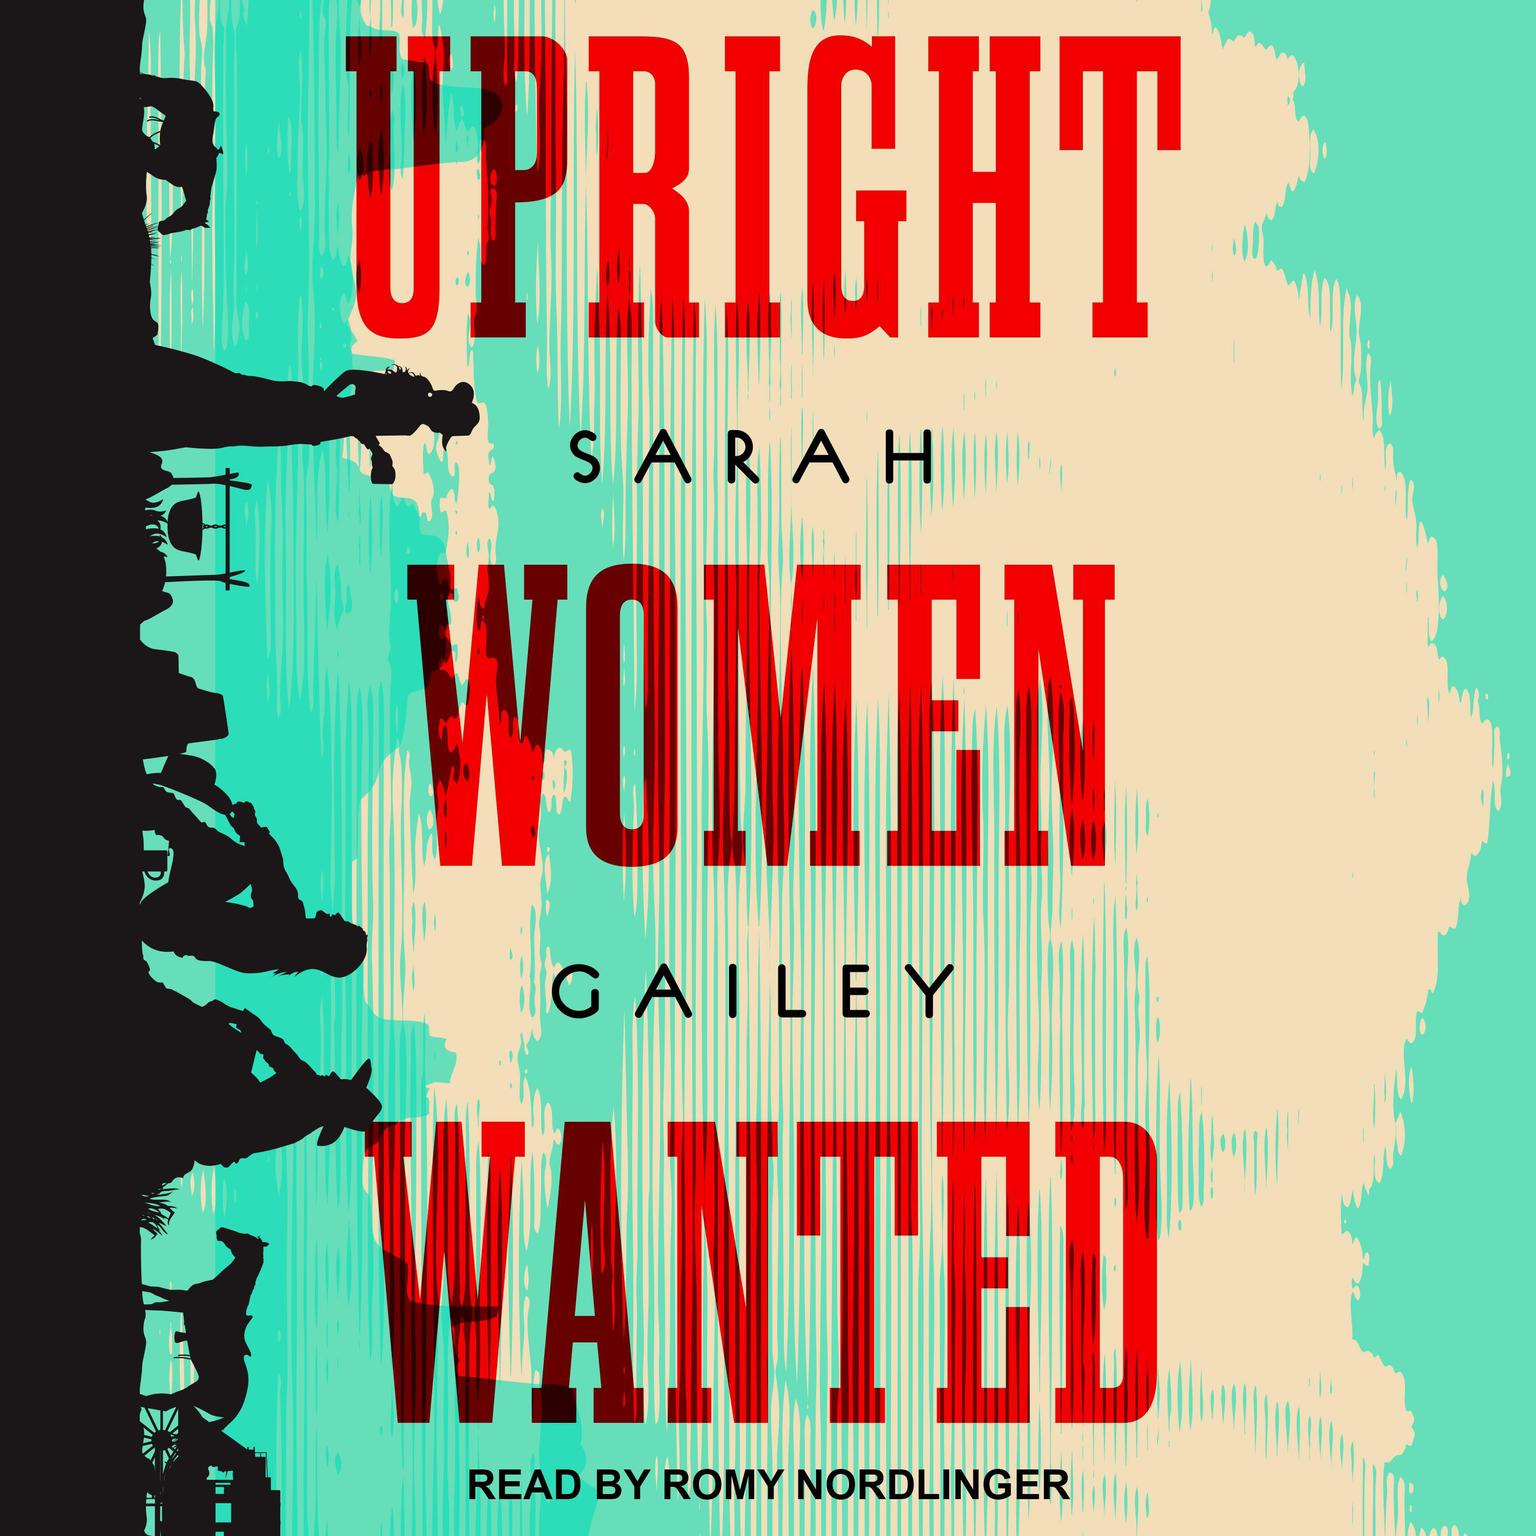 Sarah Gailey: Upright Women Wanted (Hardcover, 2020, Tor.com)